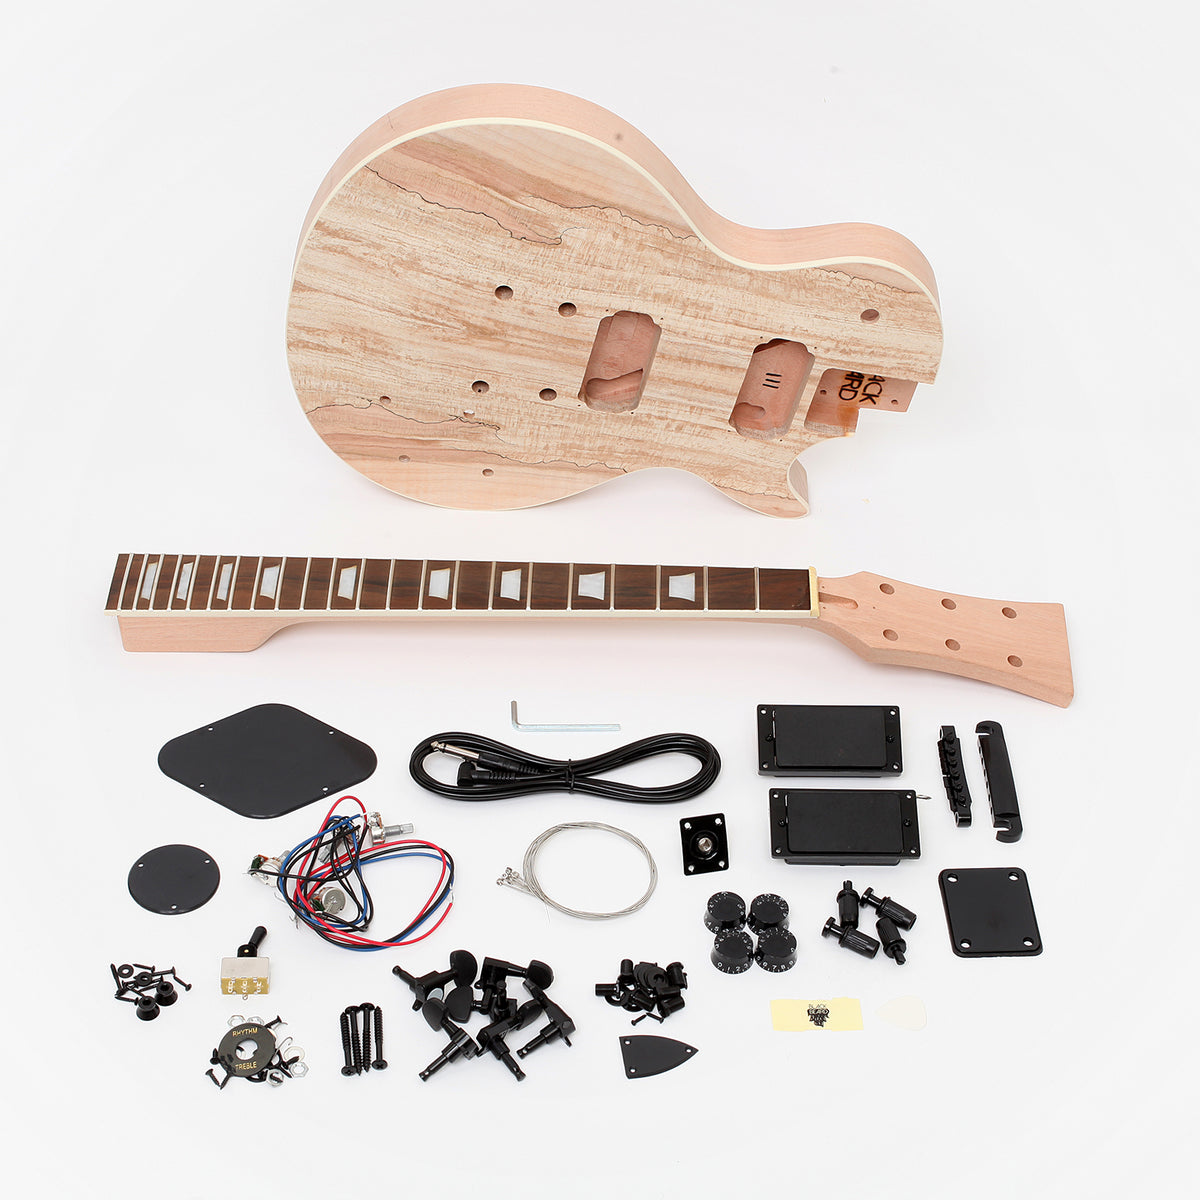 Les Paul One DIY Guitar Kit All